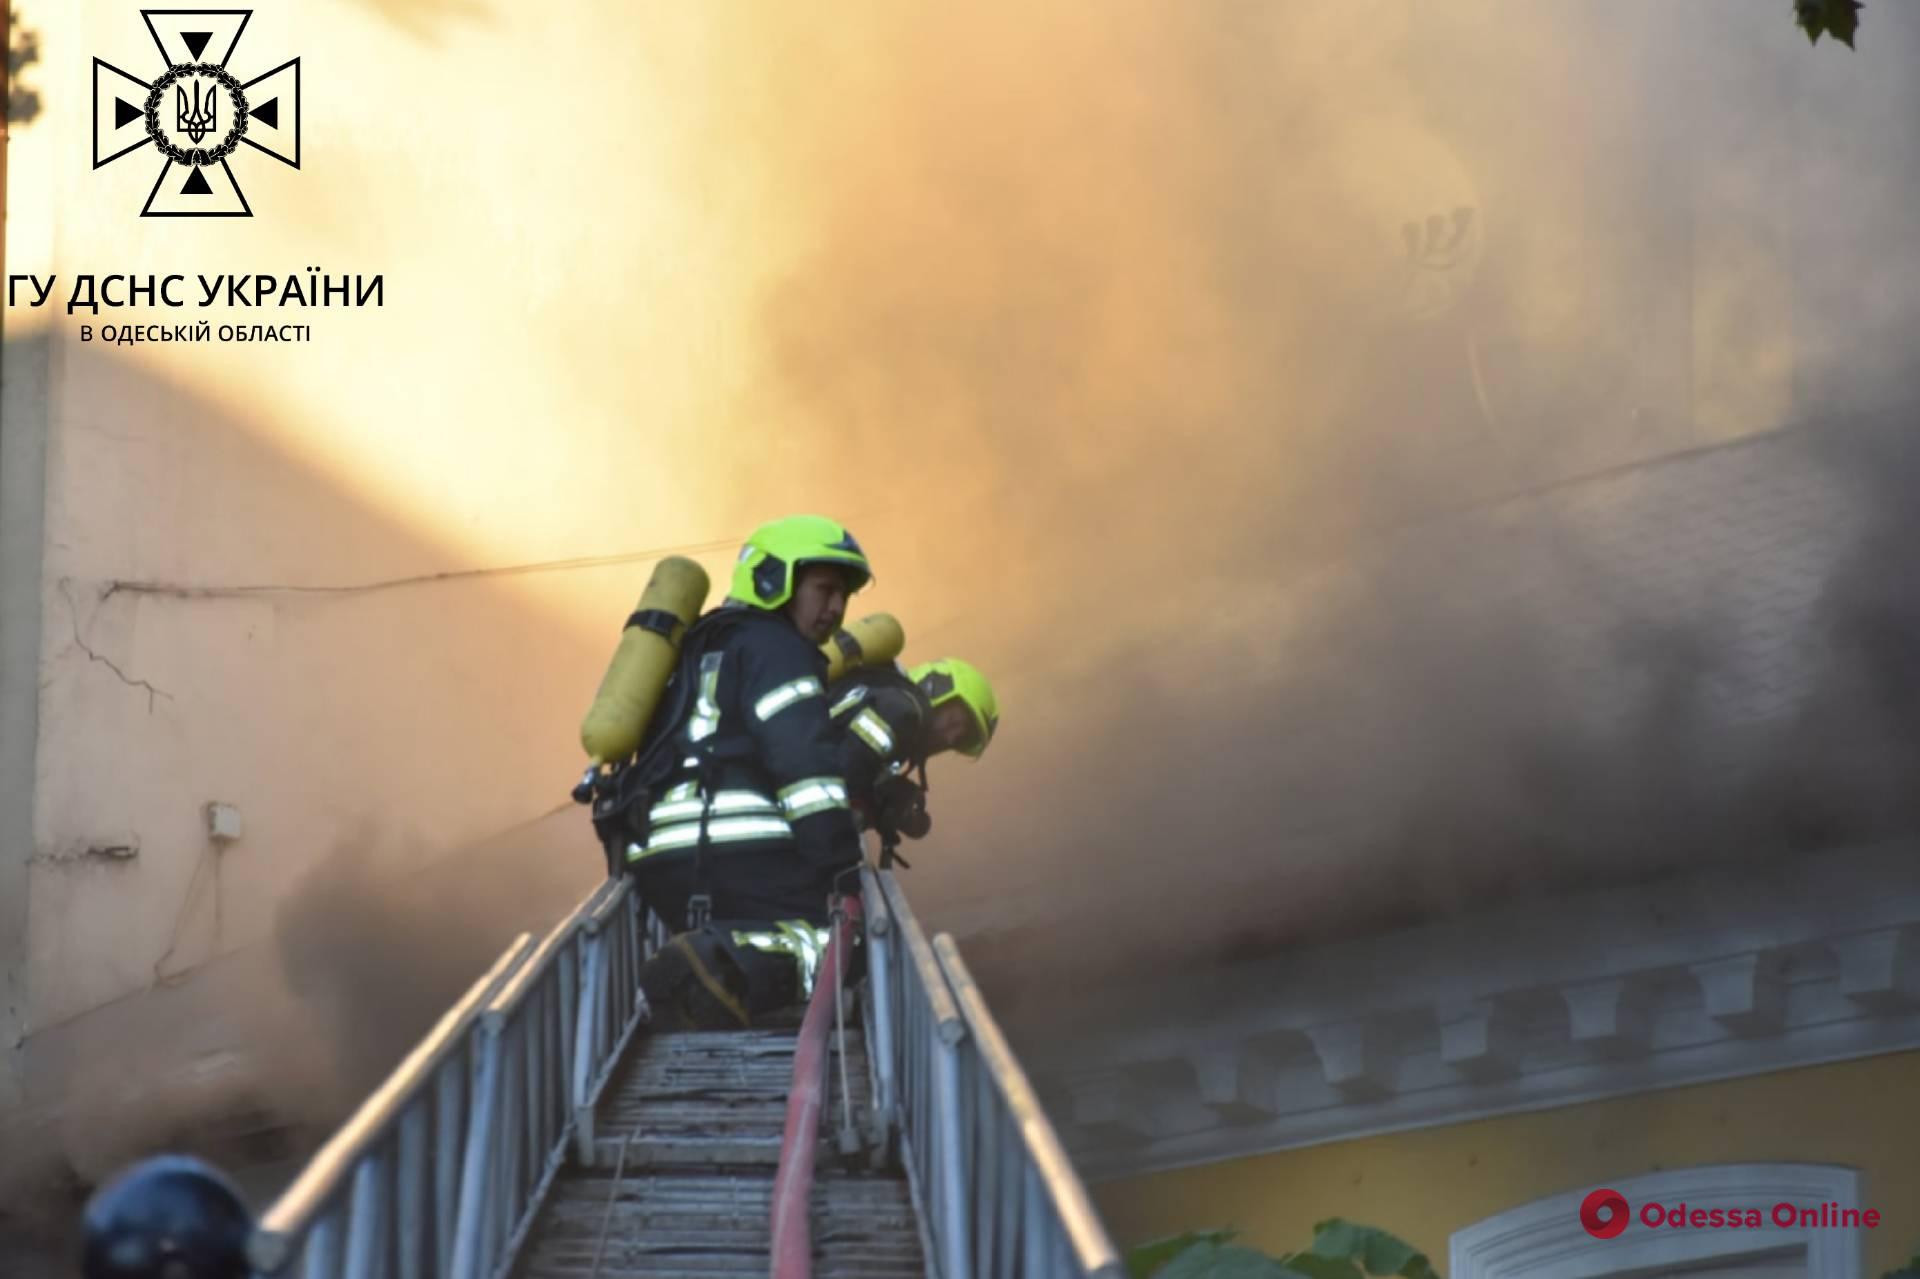 Огонь охватил 300 квадратных метров: пожар в одесском ресторане тушили три часа (фото, видео)